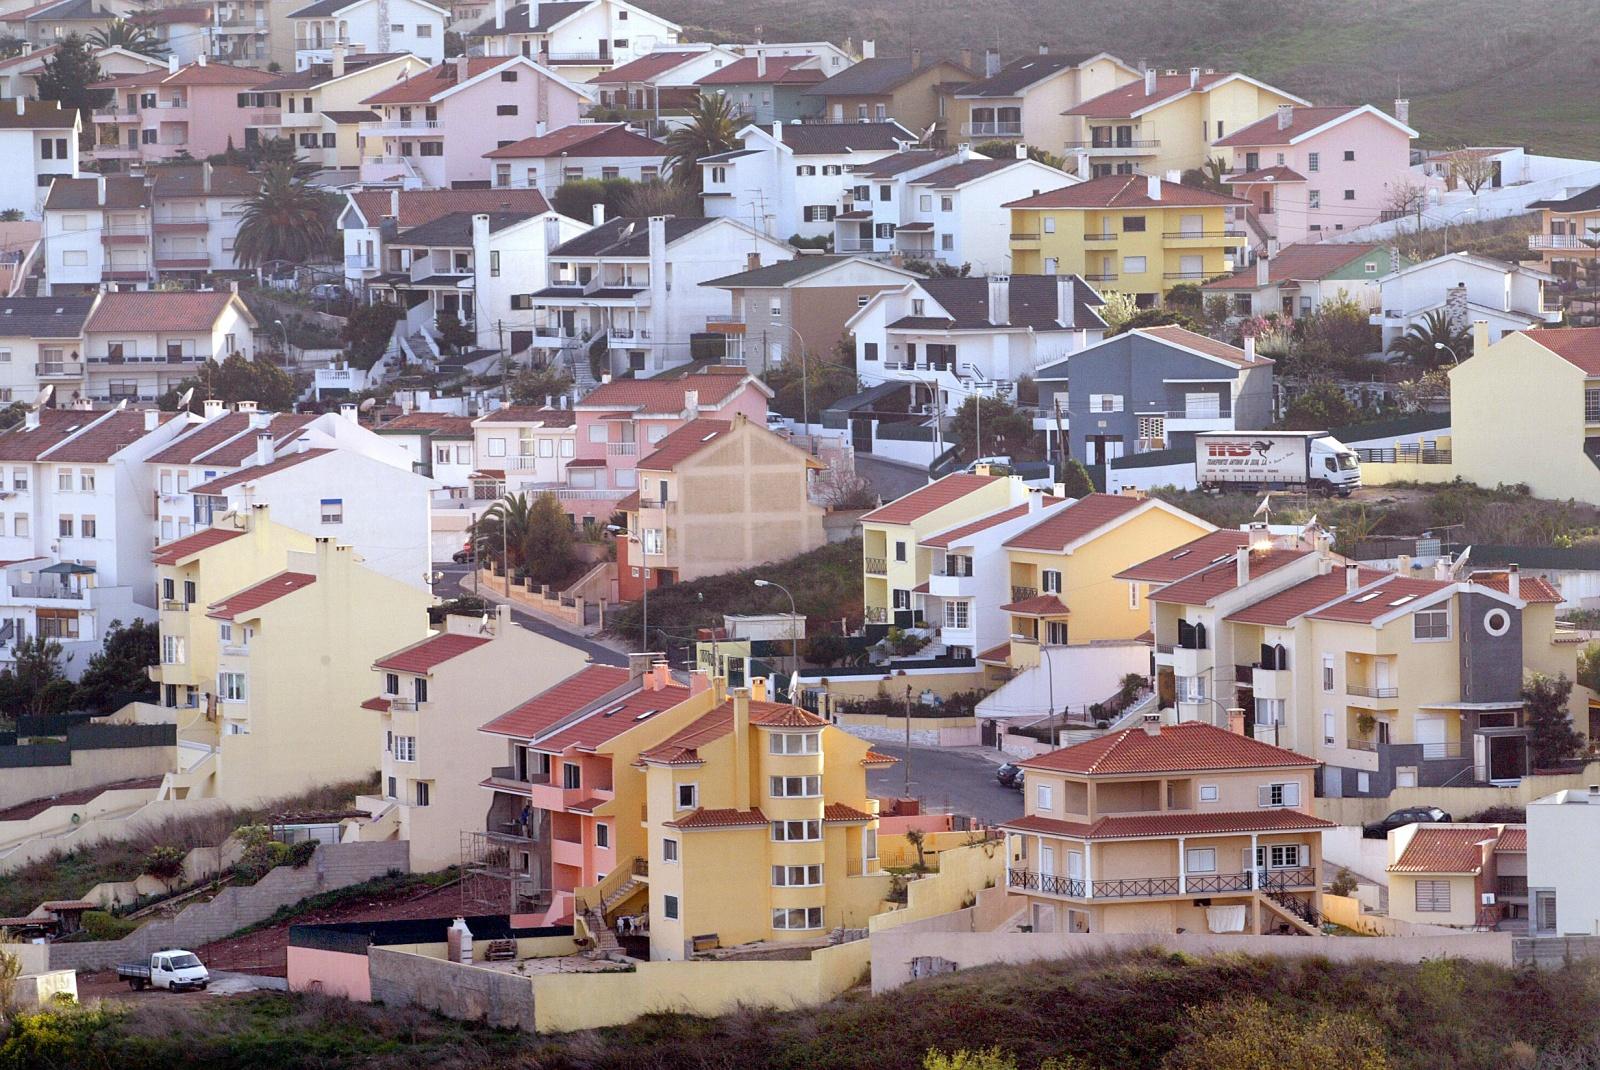 Comprar casa em Portugal está mais caro 2,2% no segundo trimestre